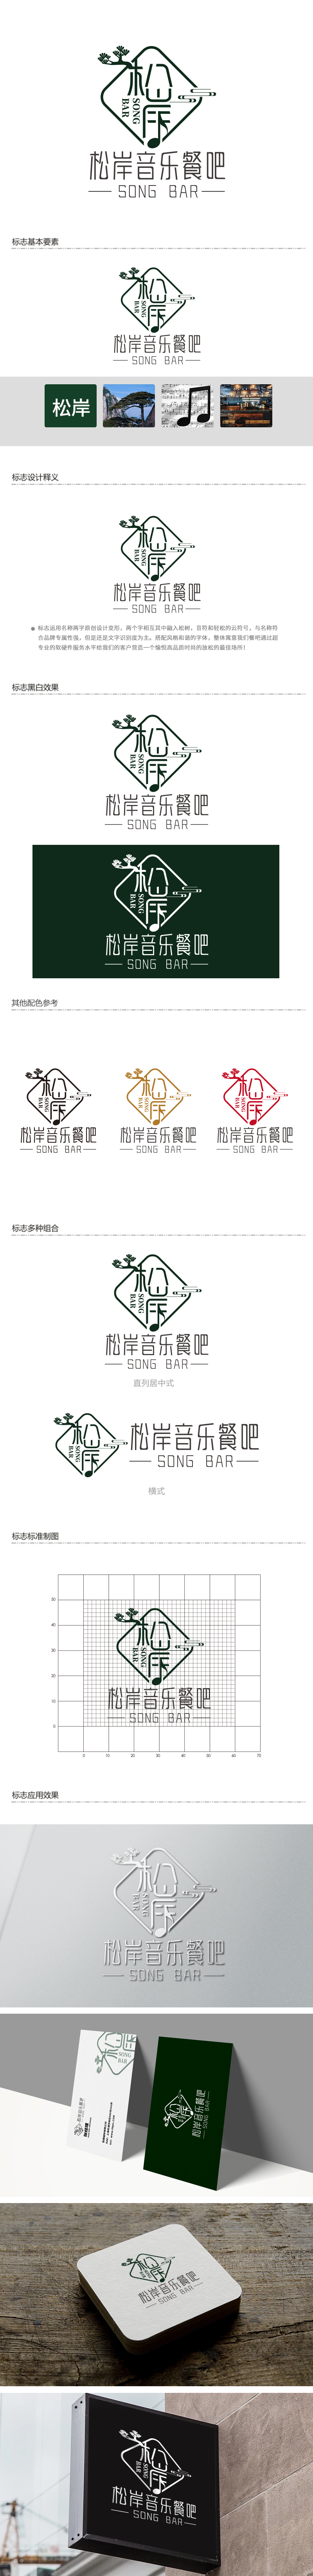 徐山的松岸logo设计